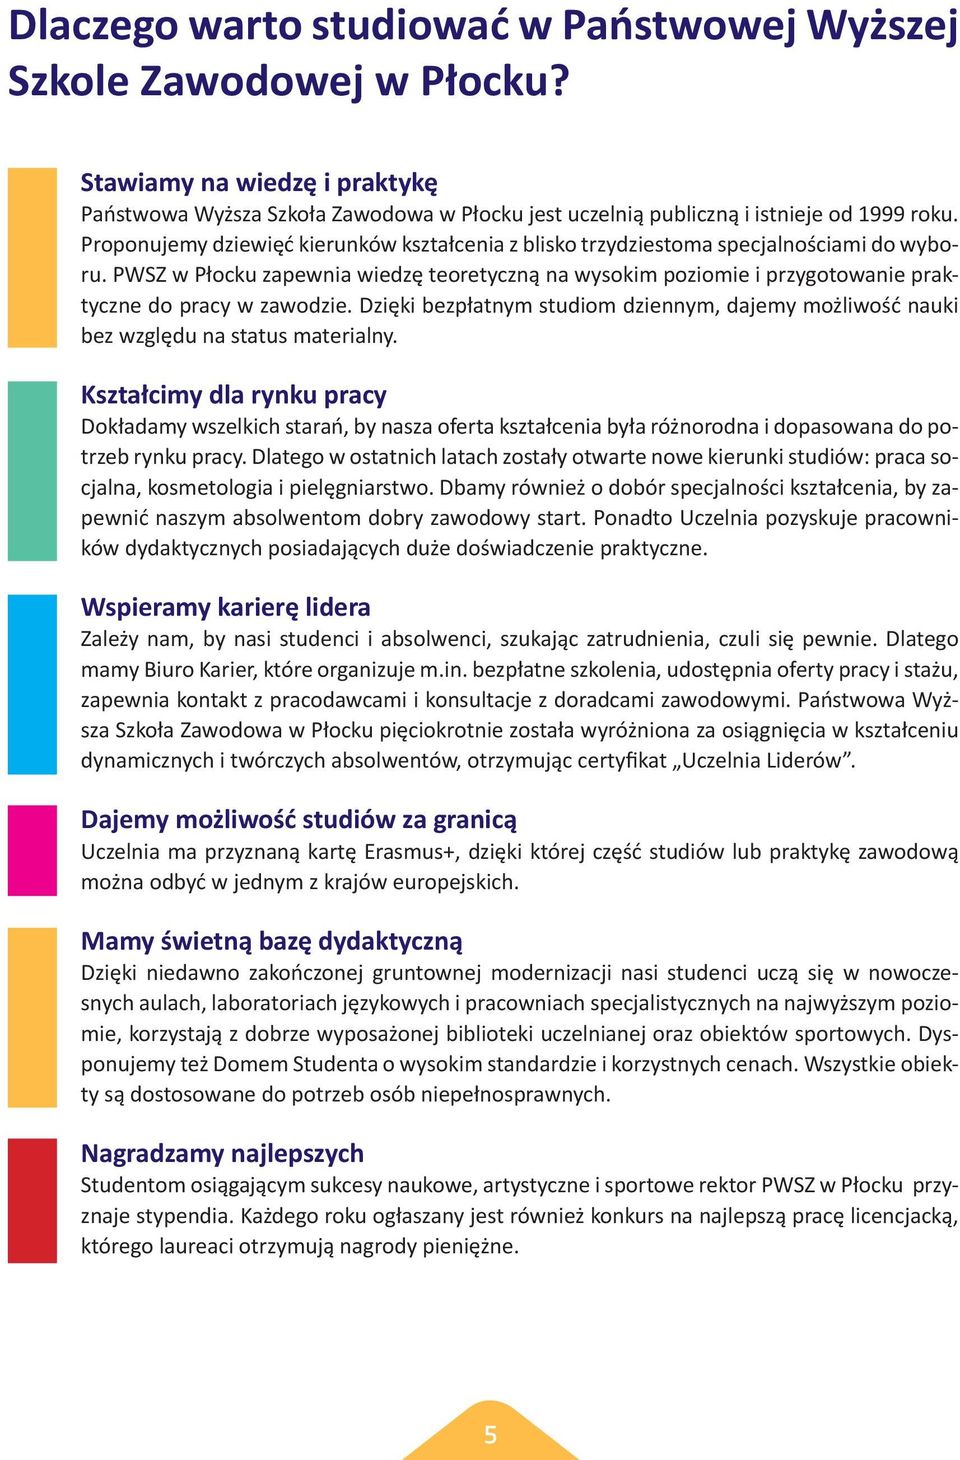 PWSZ w Płocku zapewnia wiedzę teoretyczną na wysokim poziomie i przygotowanie praktyczne do pracy w zawodzie.